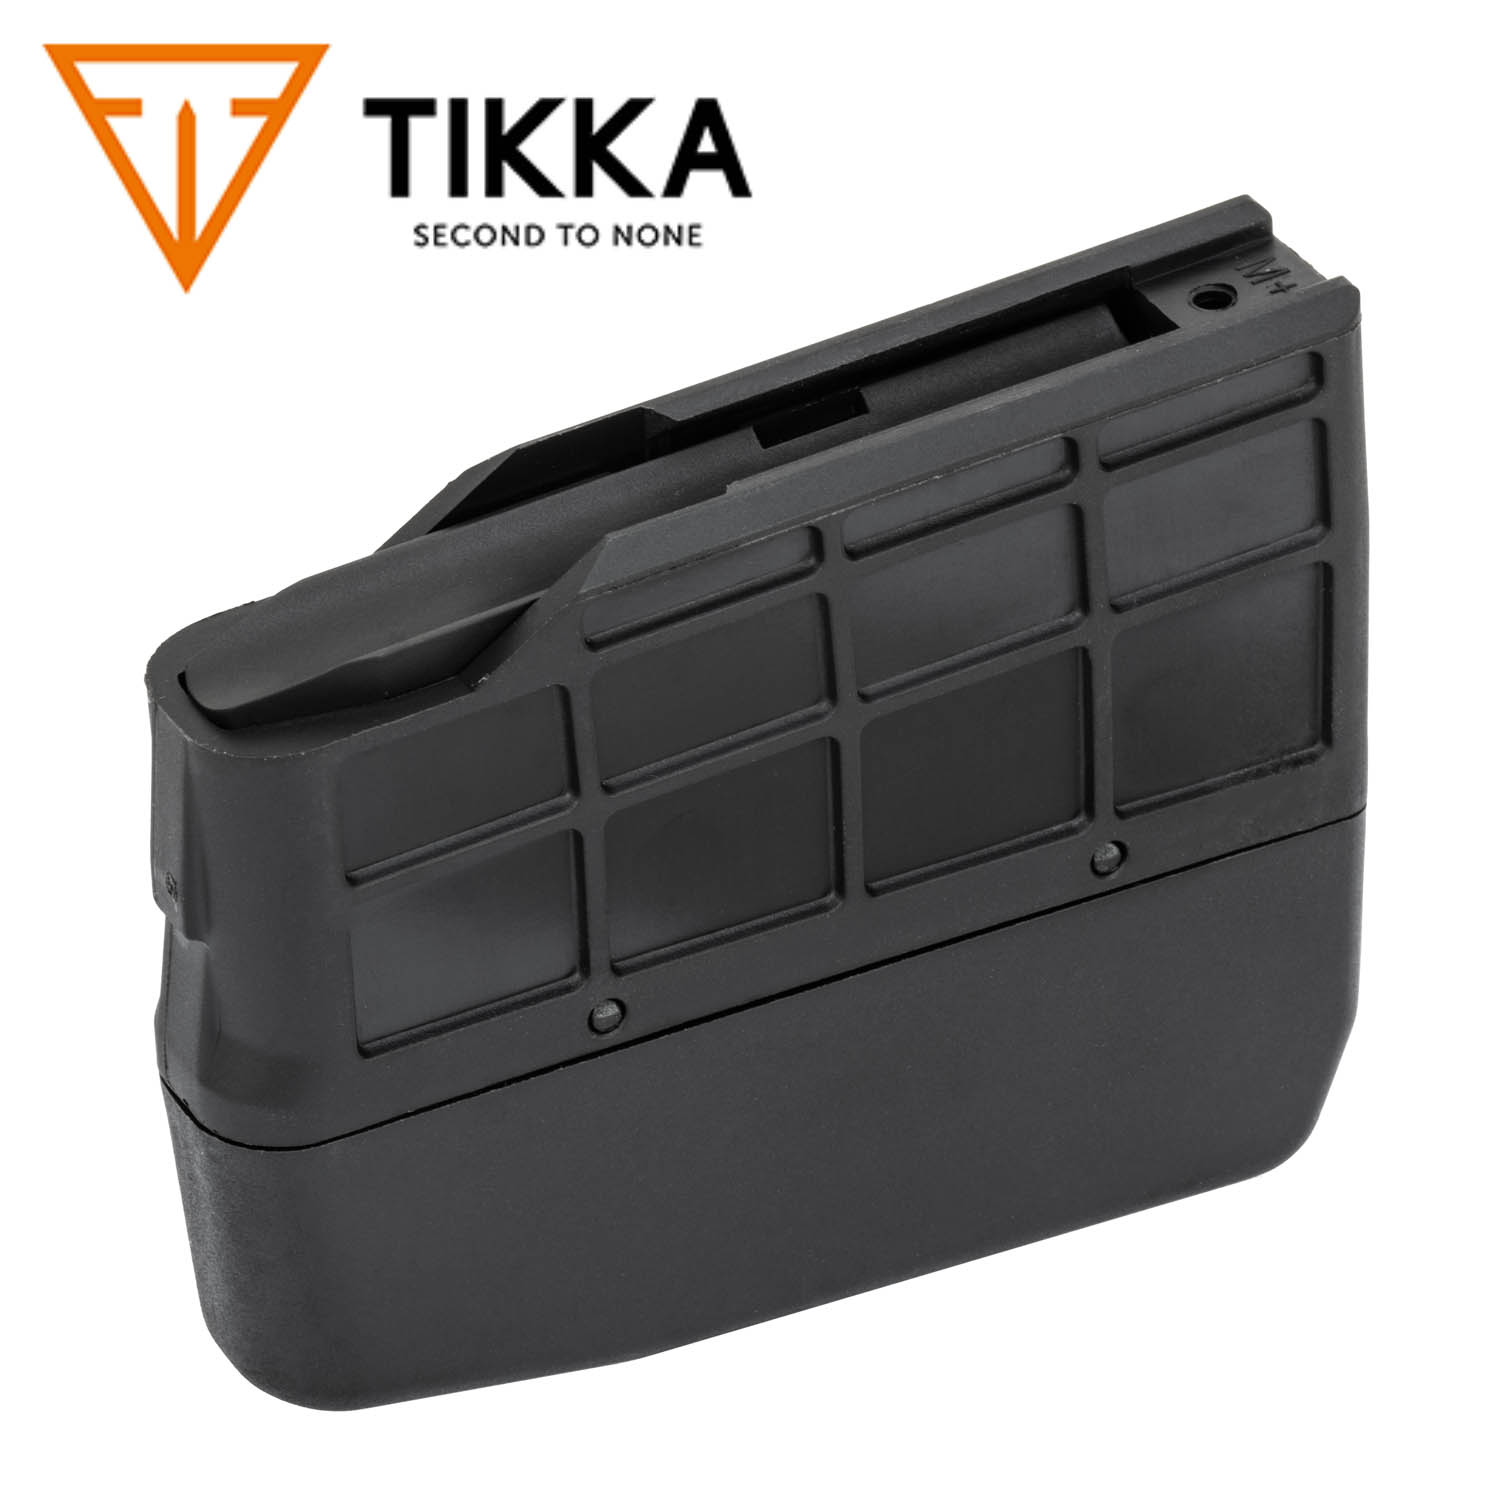 Tikka T3X 204/222/223 4 round short magazine 